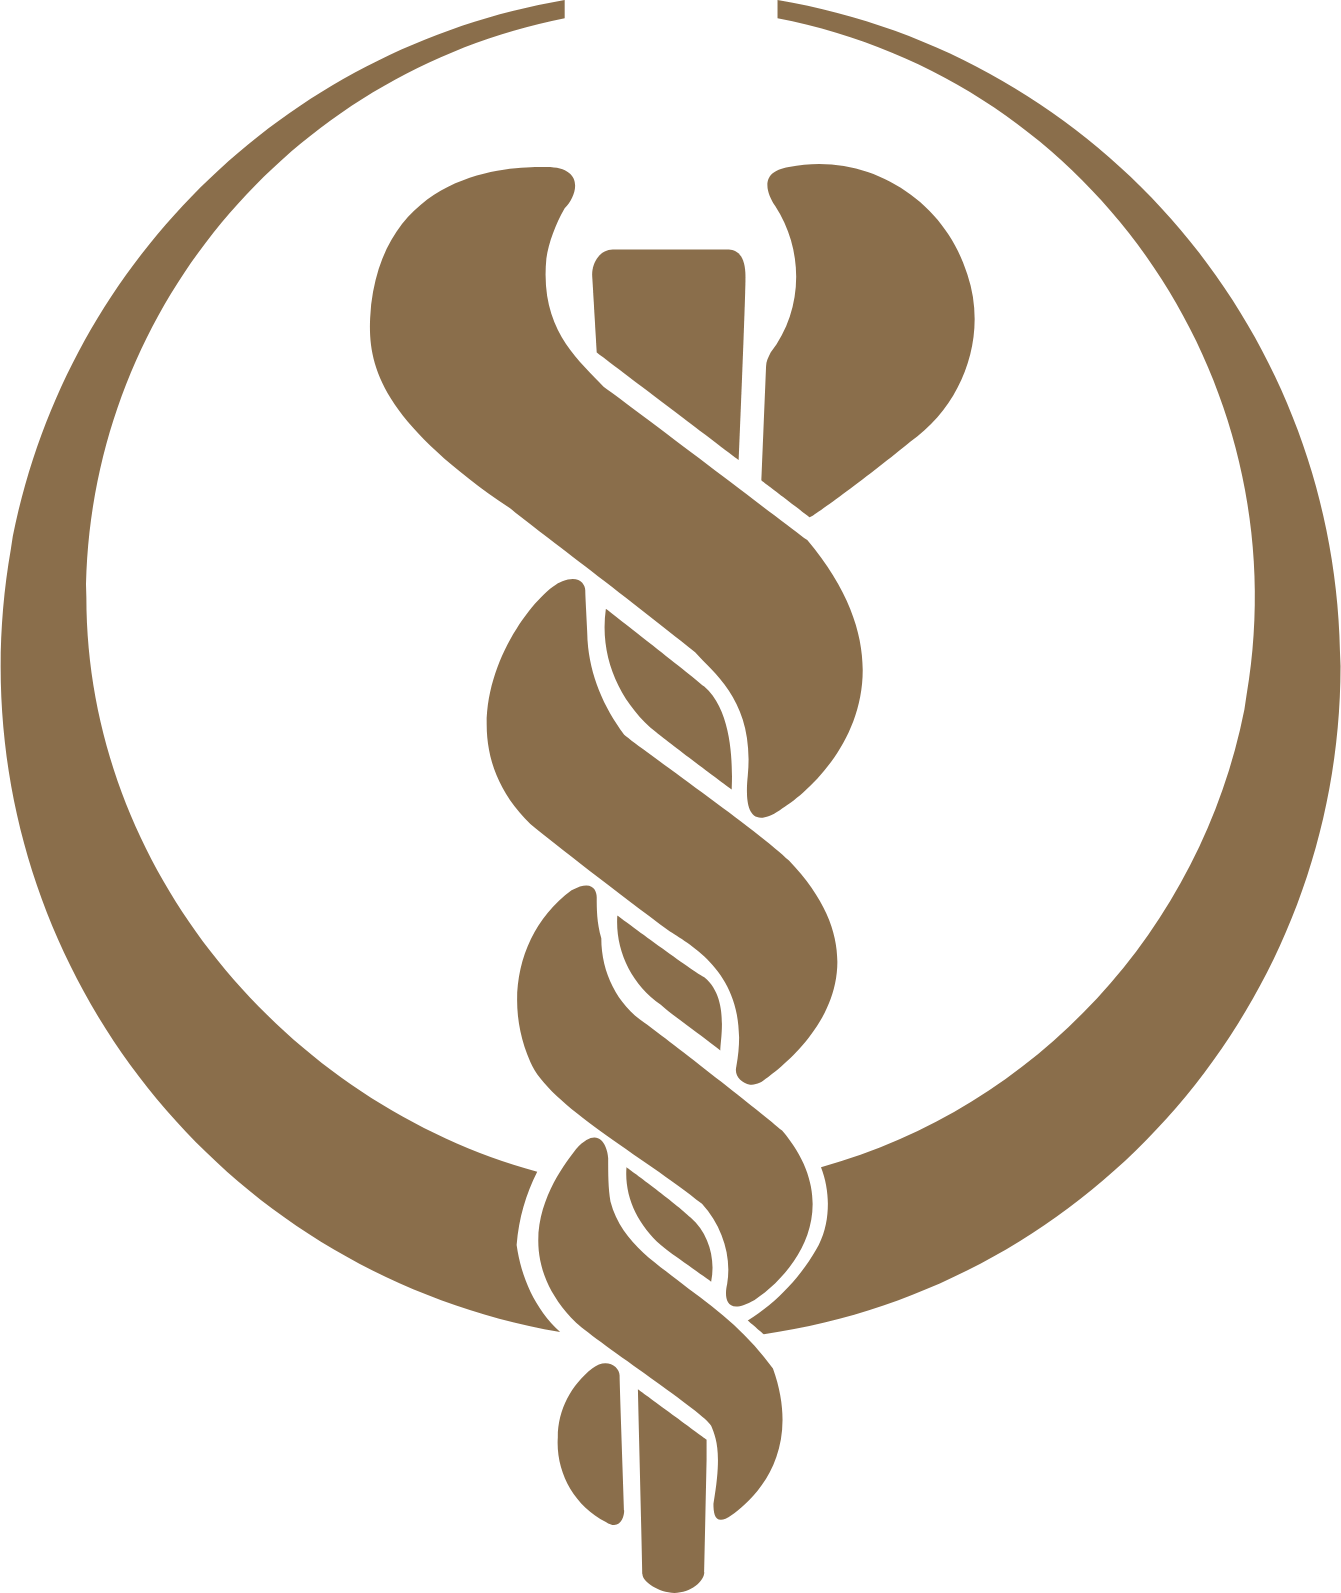 Bumrungrad Hospital logo (transparent PNG)